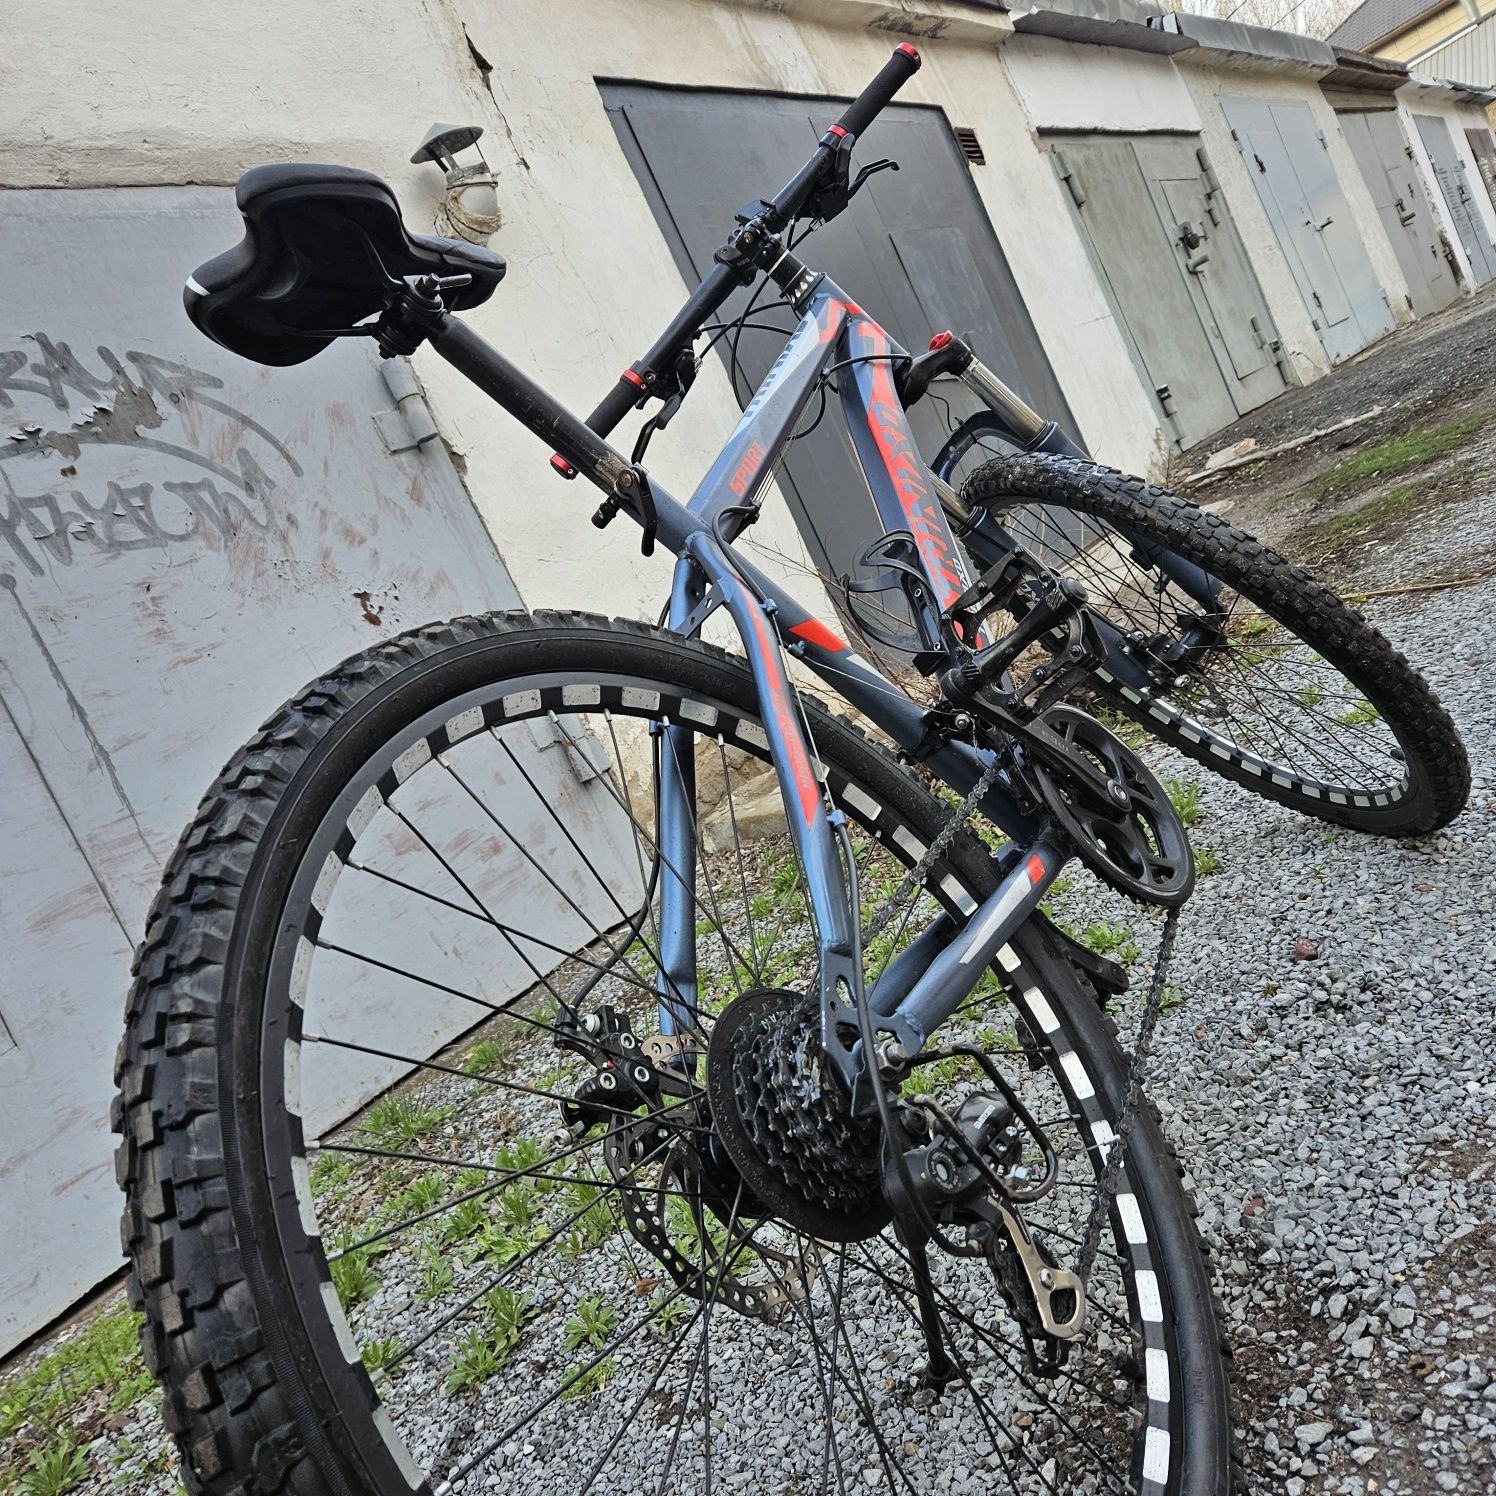 Продам горный велосипед TrinixD sport